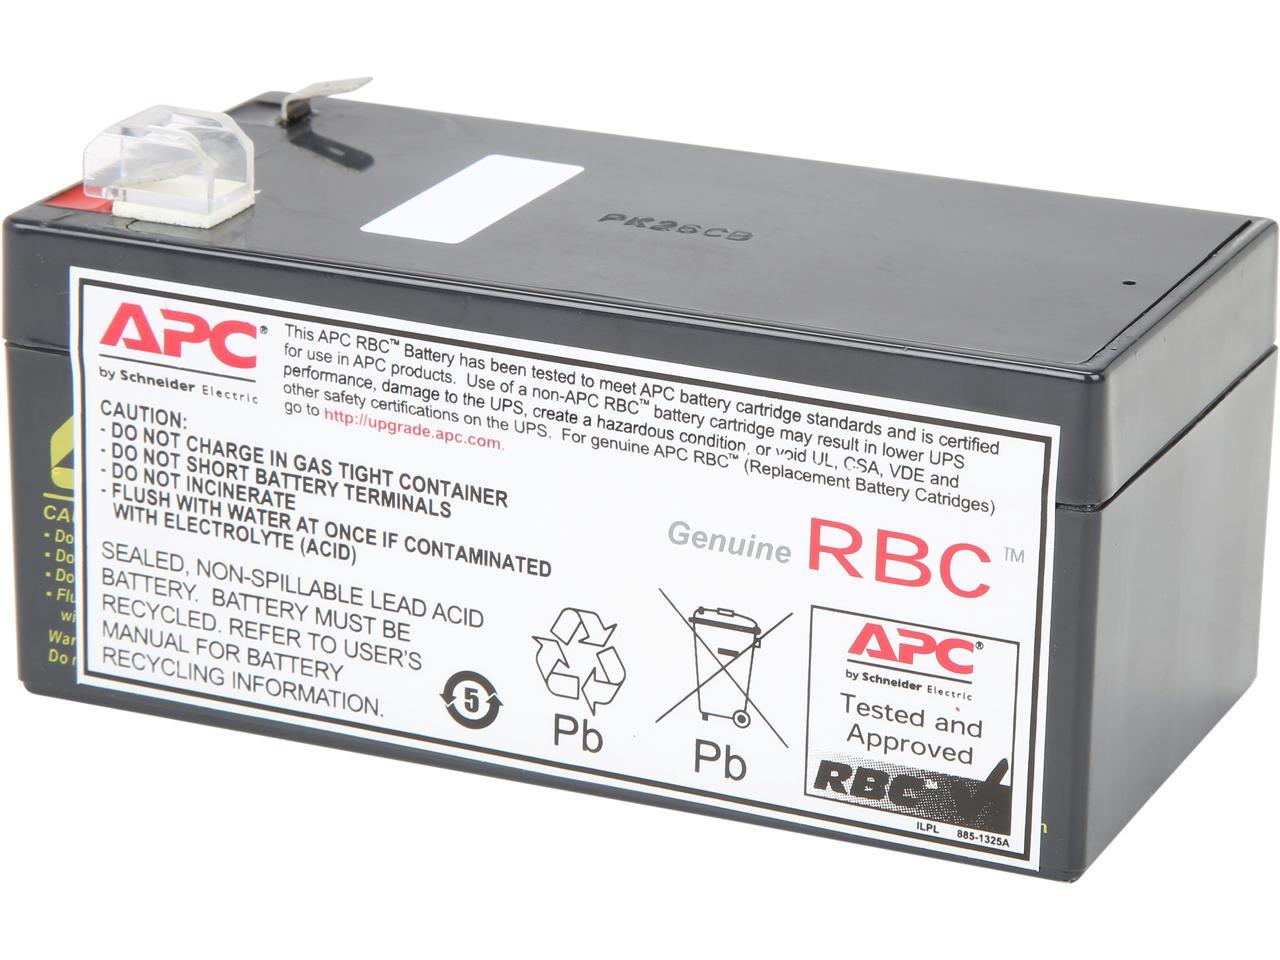 Apc ups battery. Батарея APC apcrbc143. Сменный батарейный картридж APC №143. Аккумулятор для ИБП APC rbc17. Батарея для ups APC apcrbc143.